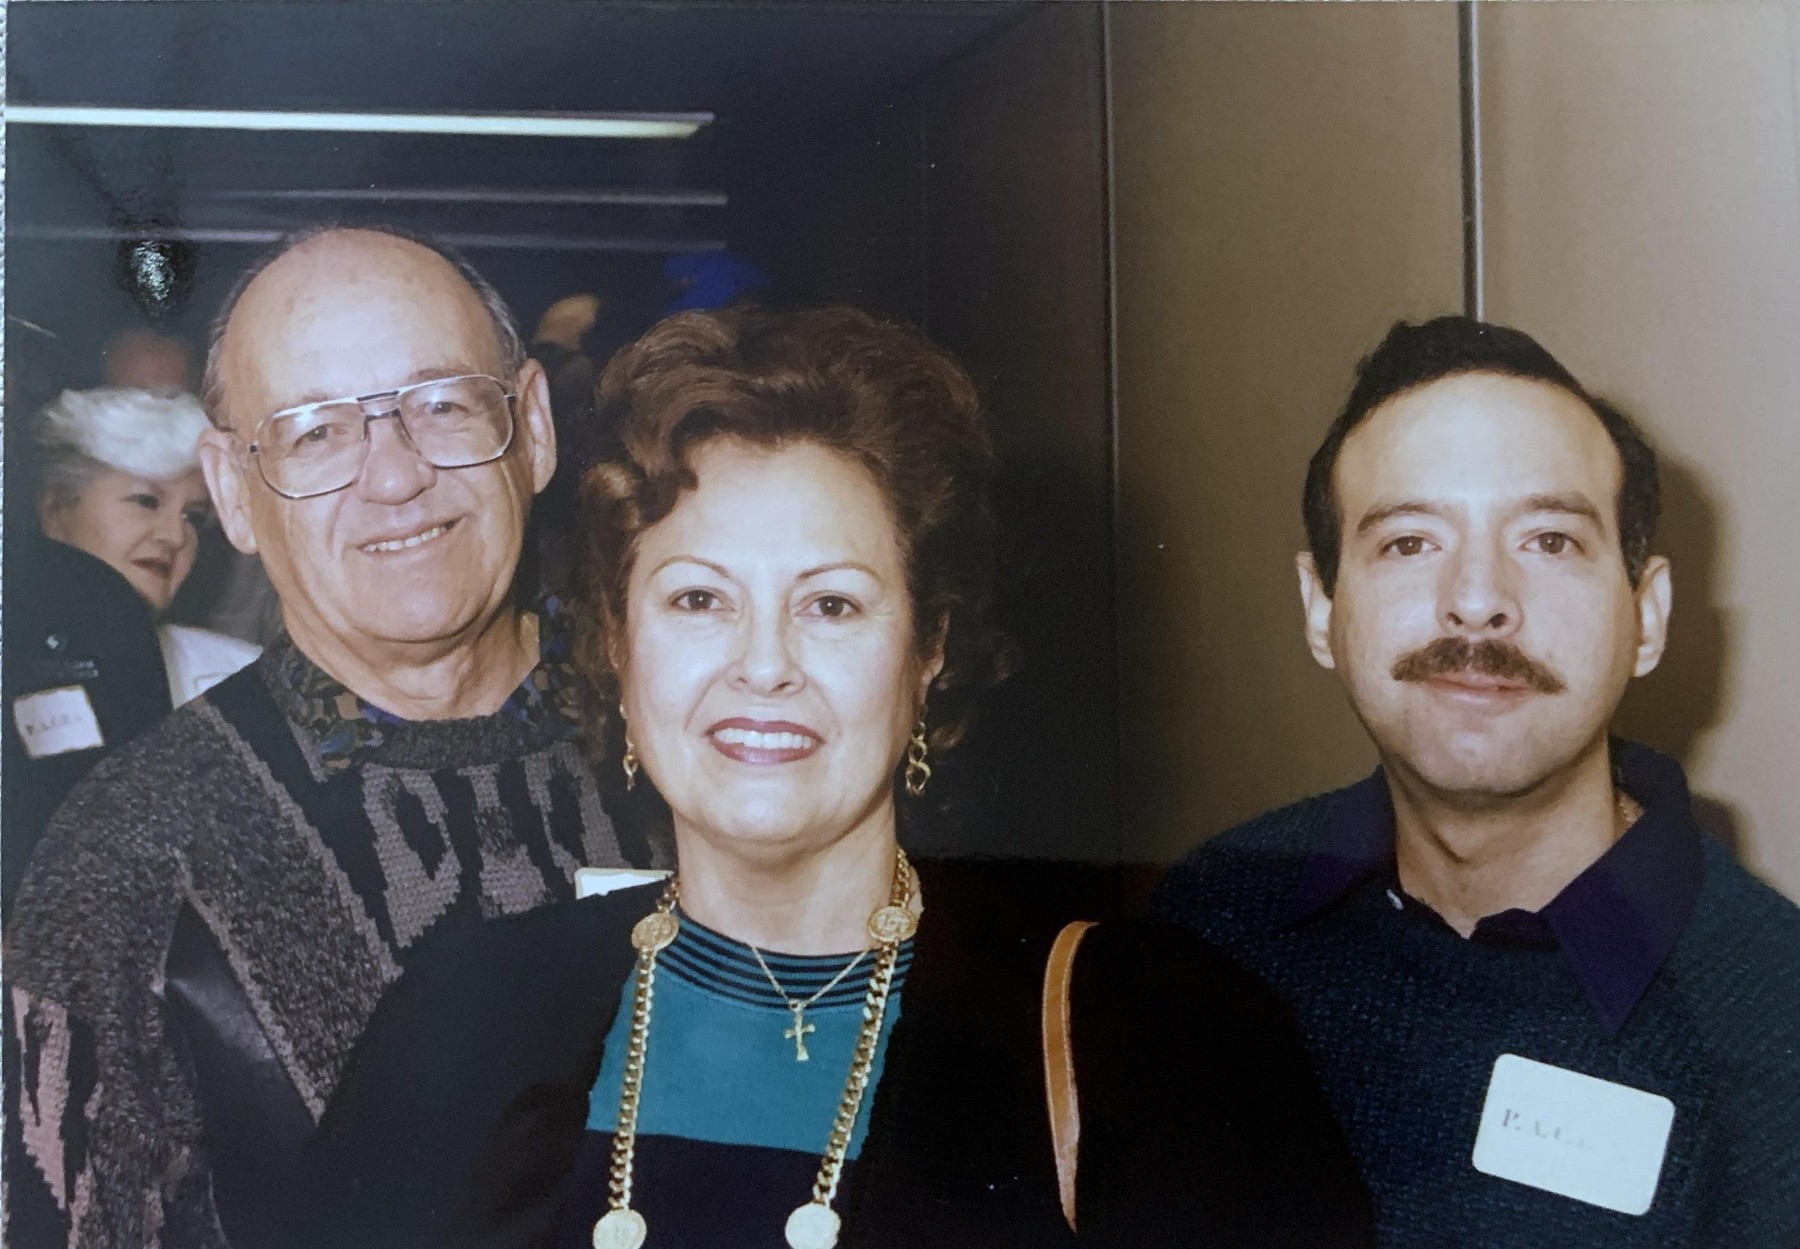 Luis R. Aparicio Obituary - Miami, FL